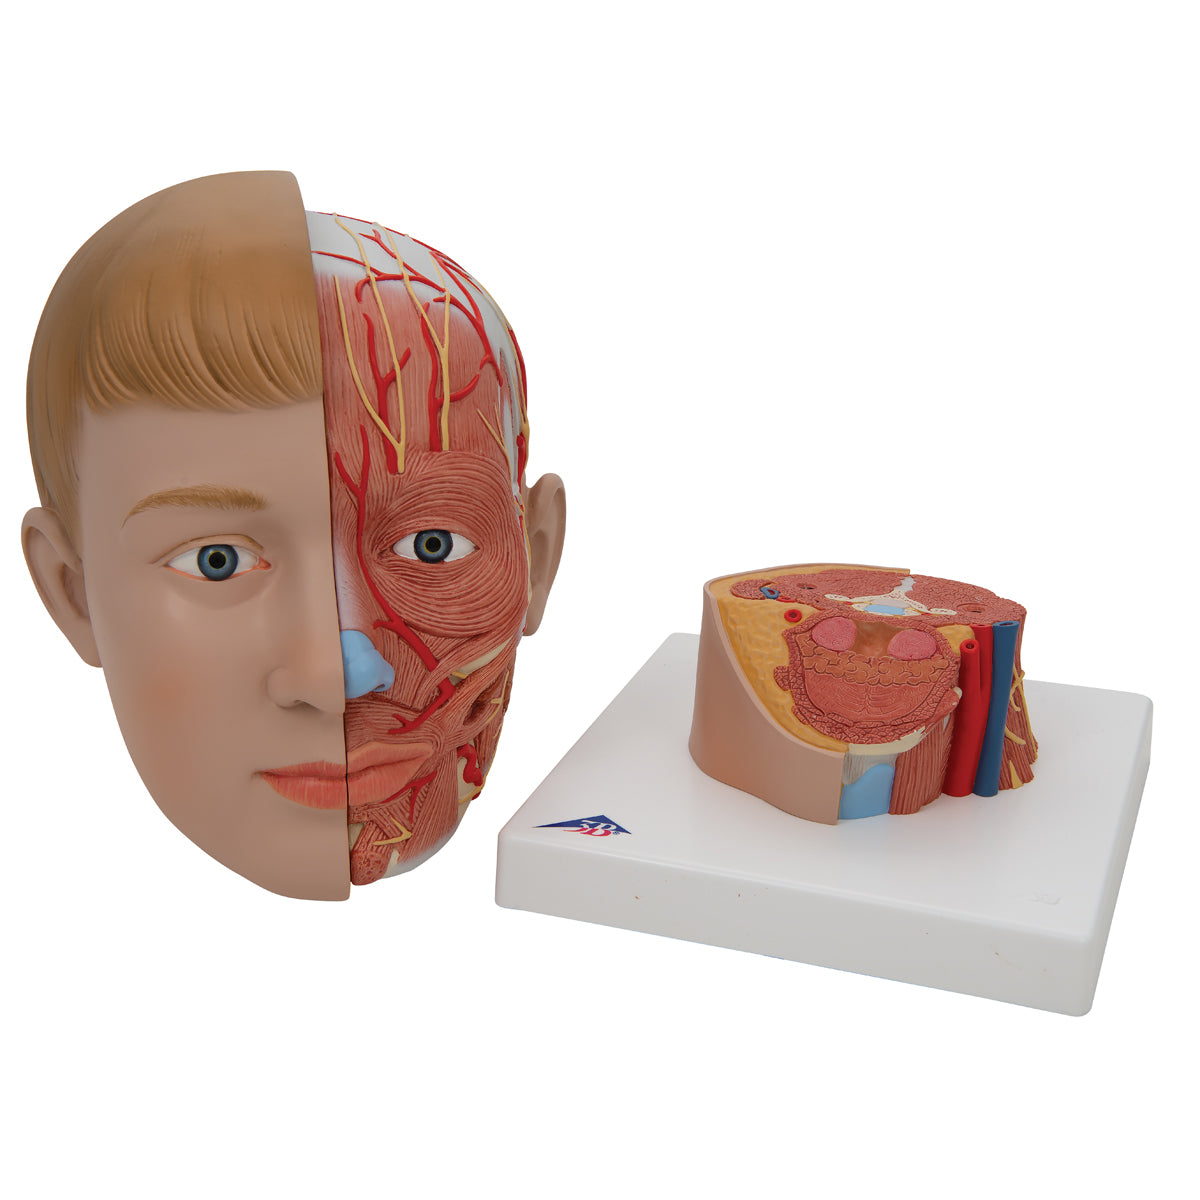 Modell av huvudet med exponerade muskler, kärl och nerver